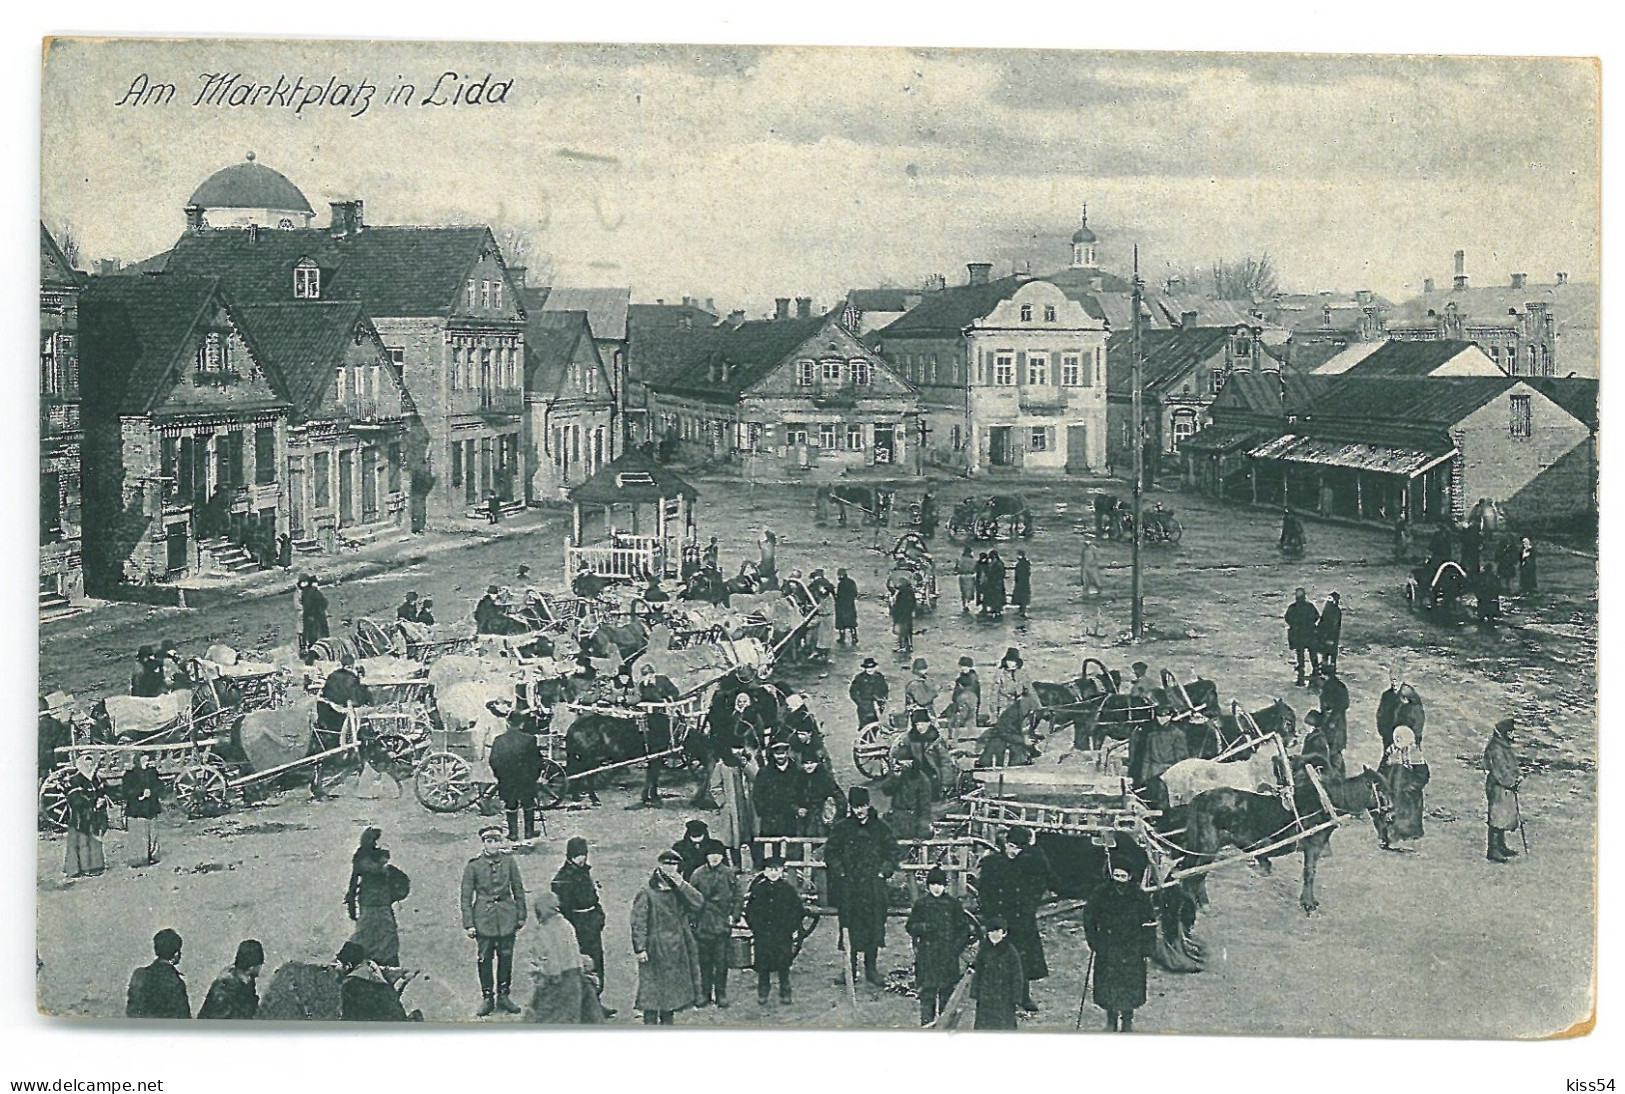 BL 42 - 20423 LIDA, Market, Left The Roof Of The Synagogue, Belarus - Old Postcard, CENSOR - Used - 1916 - Belarus